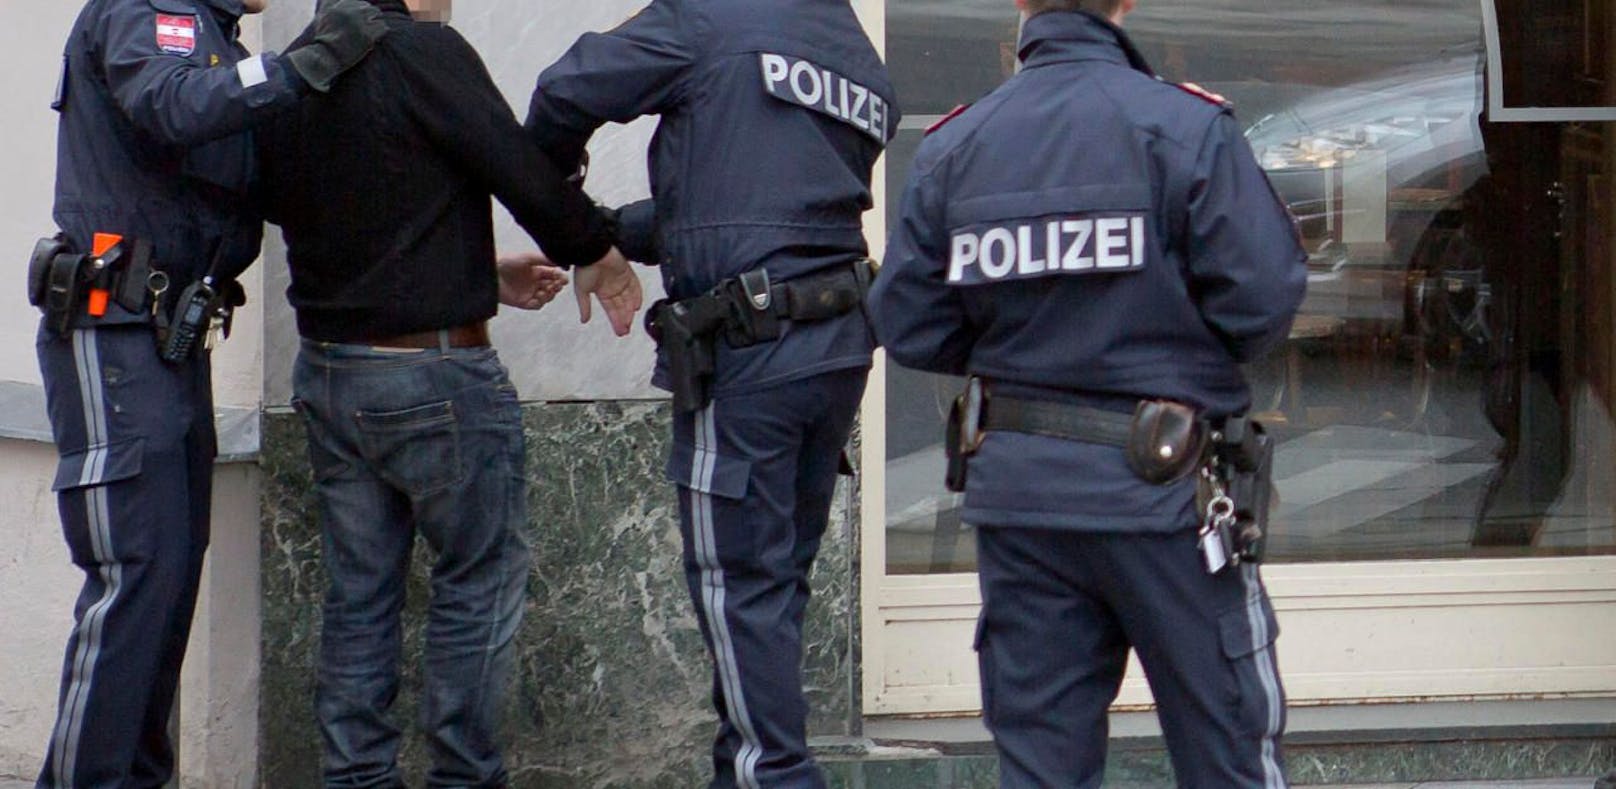 Zwei Männer, die vor einem Lokal stritten, wurden am Dienstagnachmittag in Wien festgenommen. (Symbolfoto)